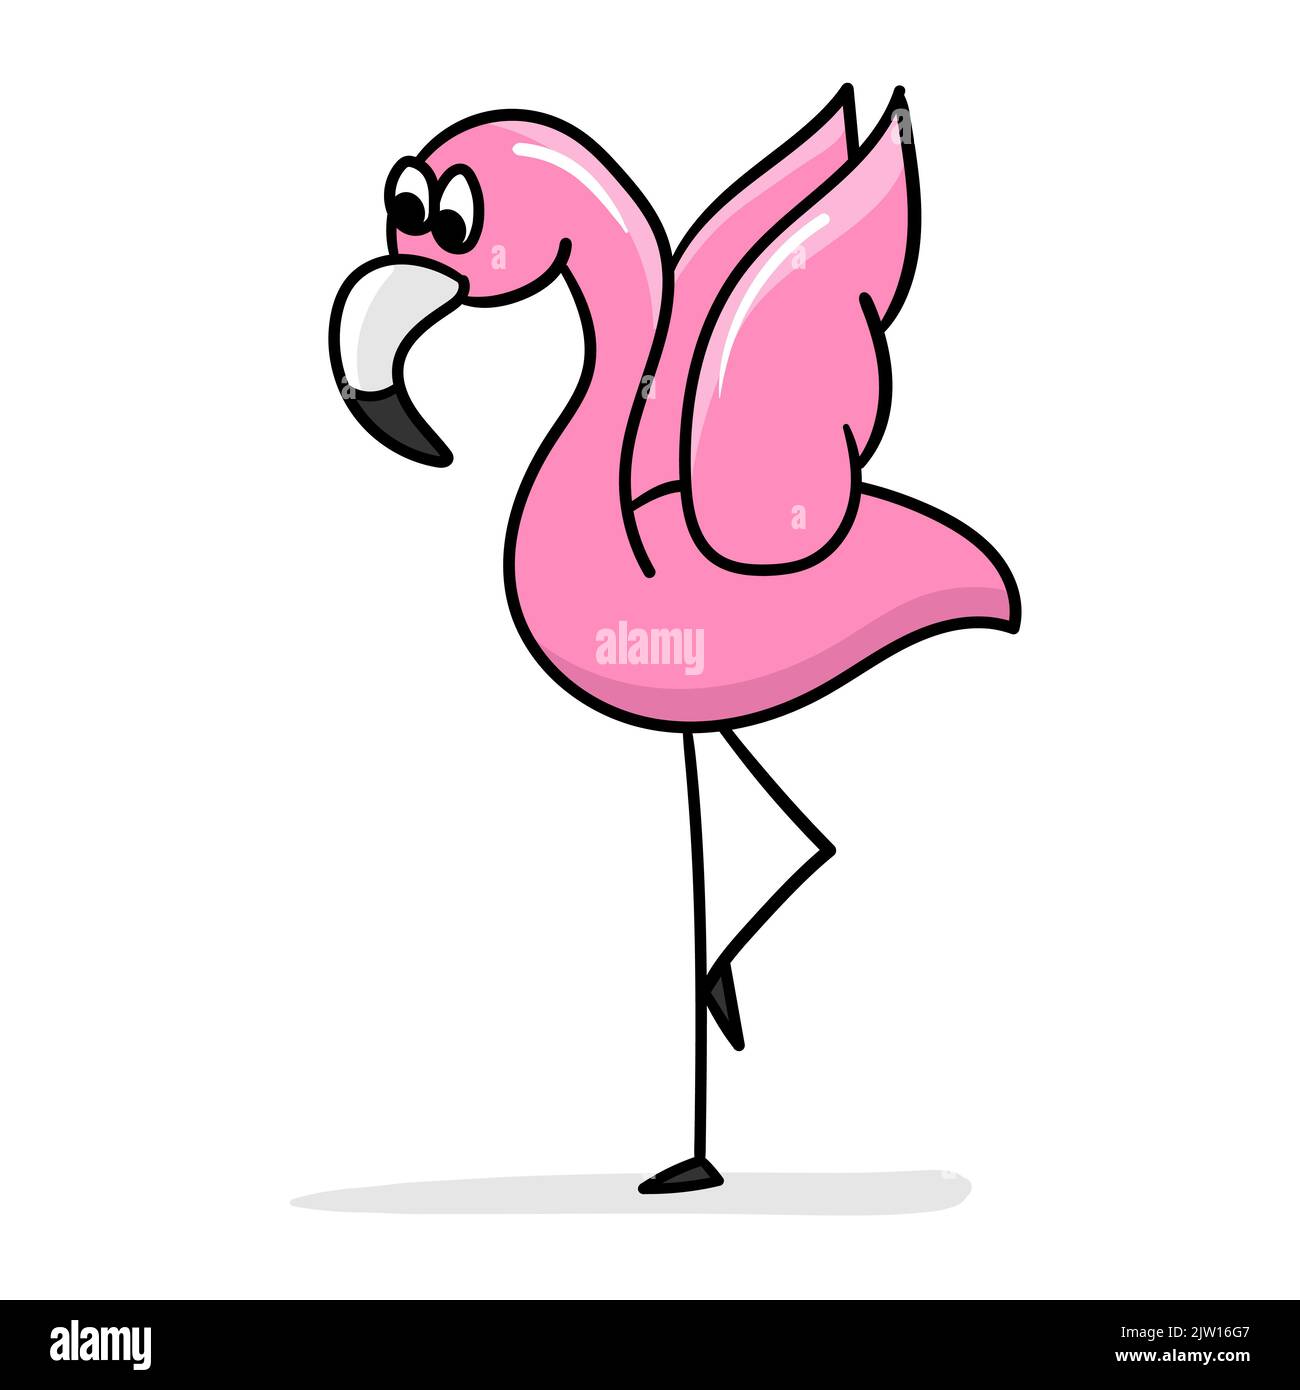 Dessin animé flamant. Le flamant rose mignon a soulevé ses ailes et se tient sur une jambe. Autocollant de dessin animé, contour épais. Icône de conception Illustration de Vecteur